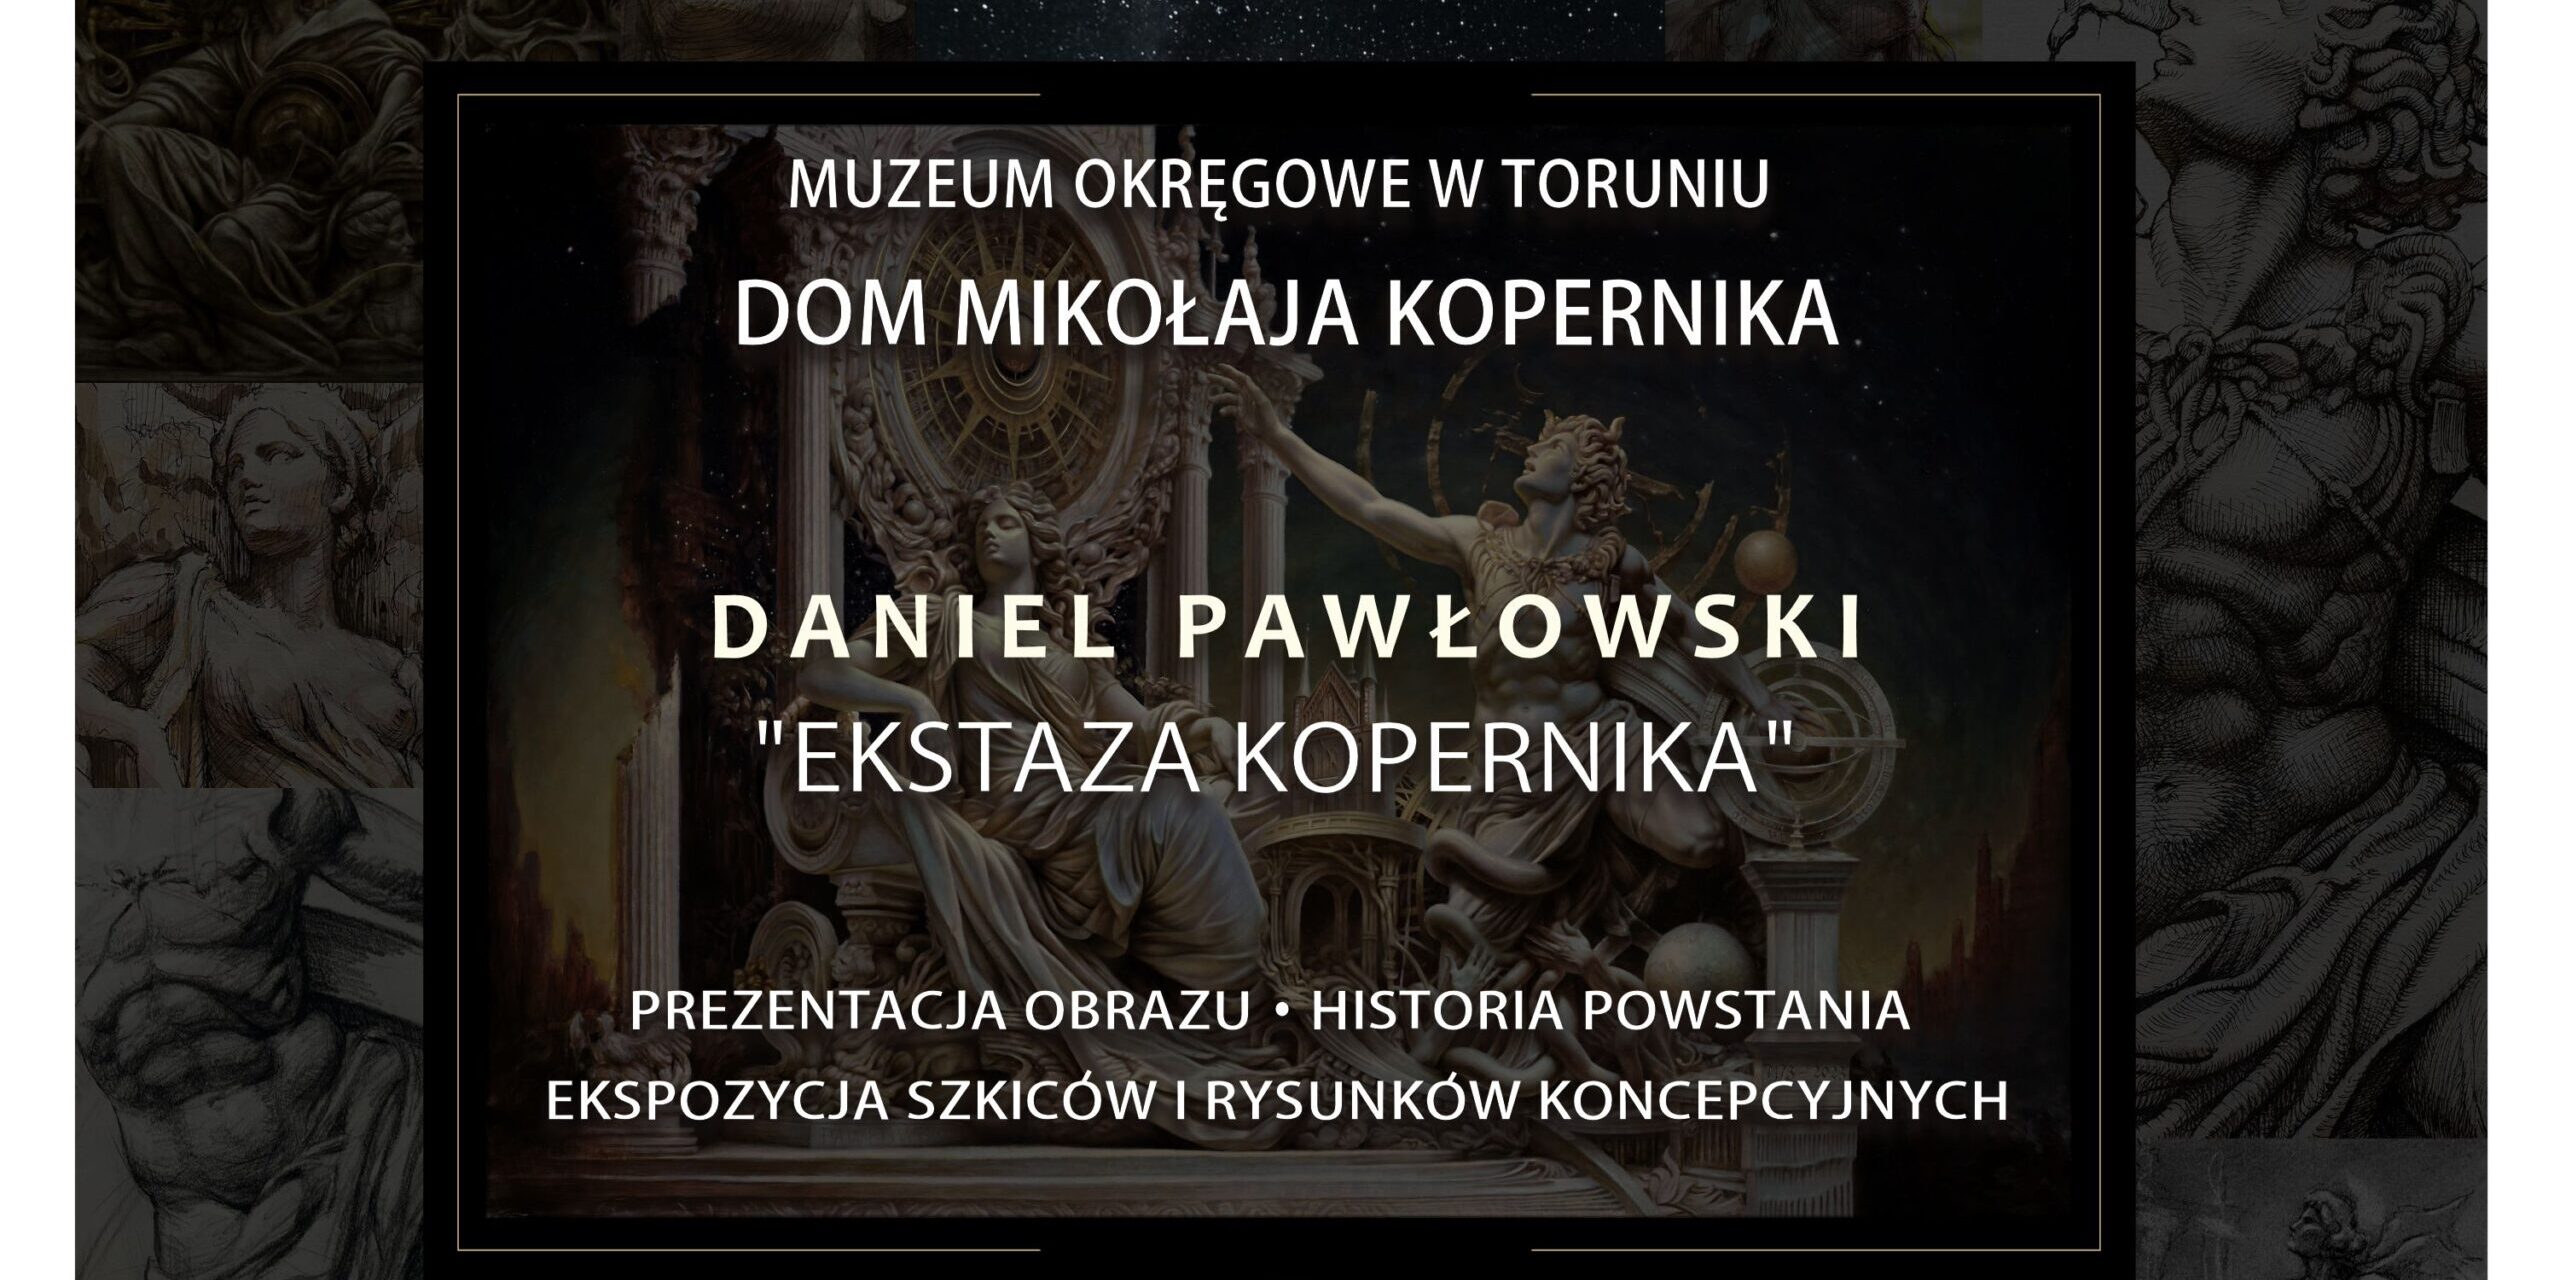 Prezentacje obrazu Daniela Pawłowskiego pt. „Ekstaza Kopernika” w Domu Mikołaja Kopernika.